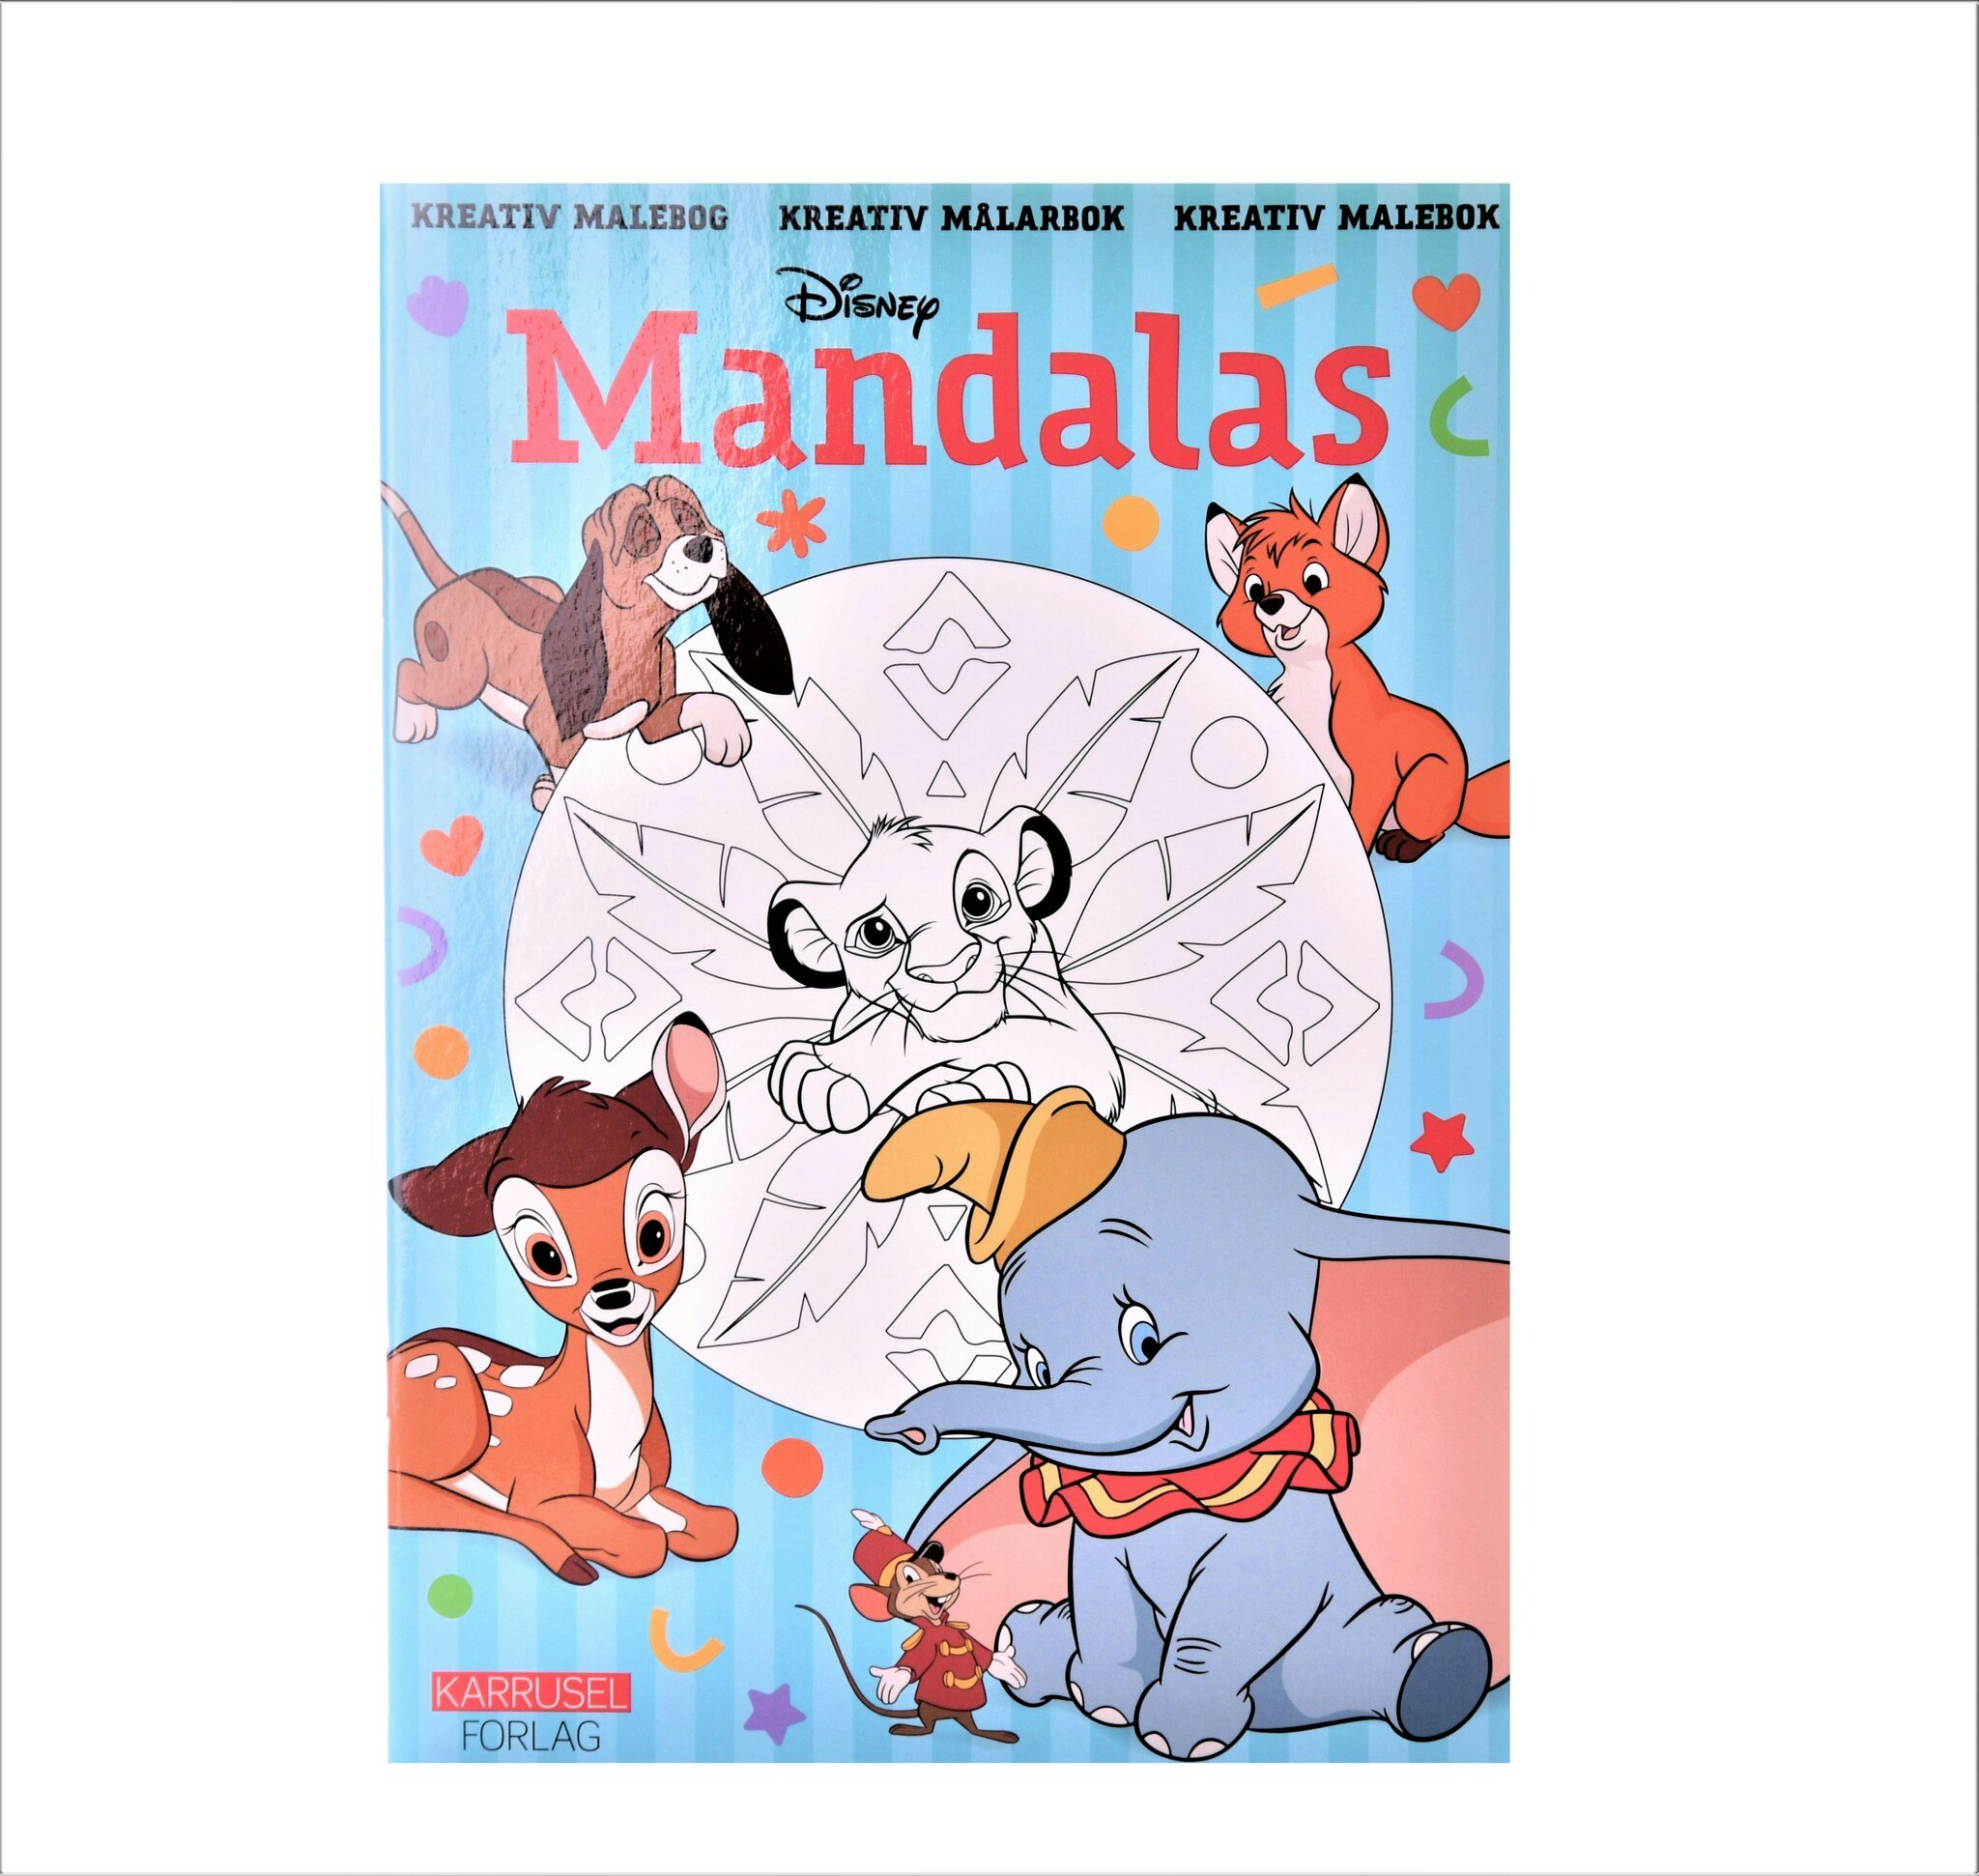 Låt fantasin flöda och måla dem minsta från Disneys filmer. Målarbok med mandalas med Simba, Bambi och lilla Dumbo med sina stora fina öron.